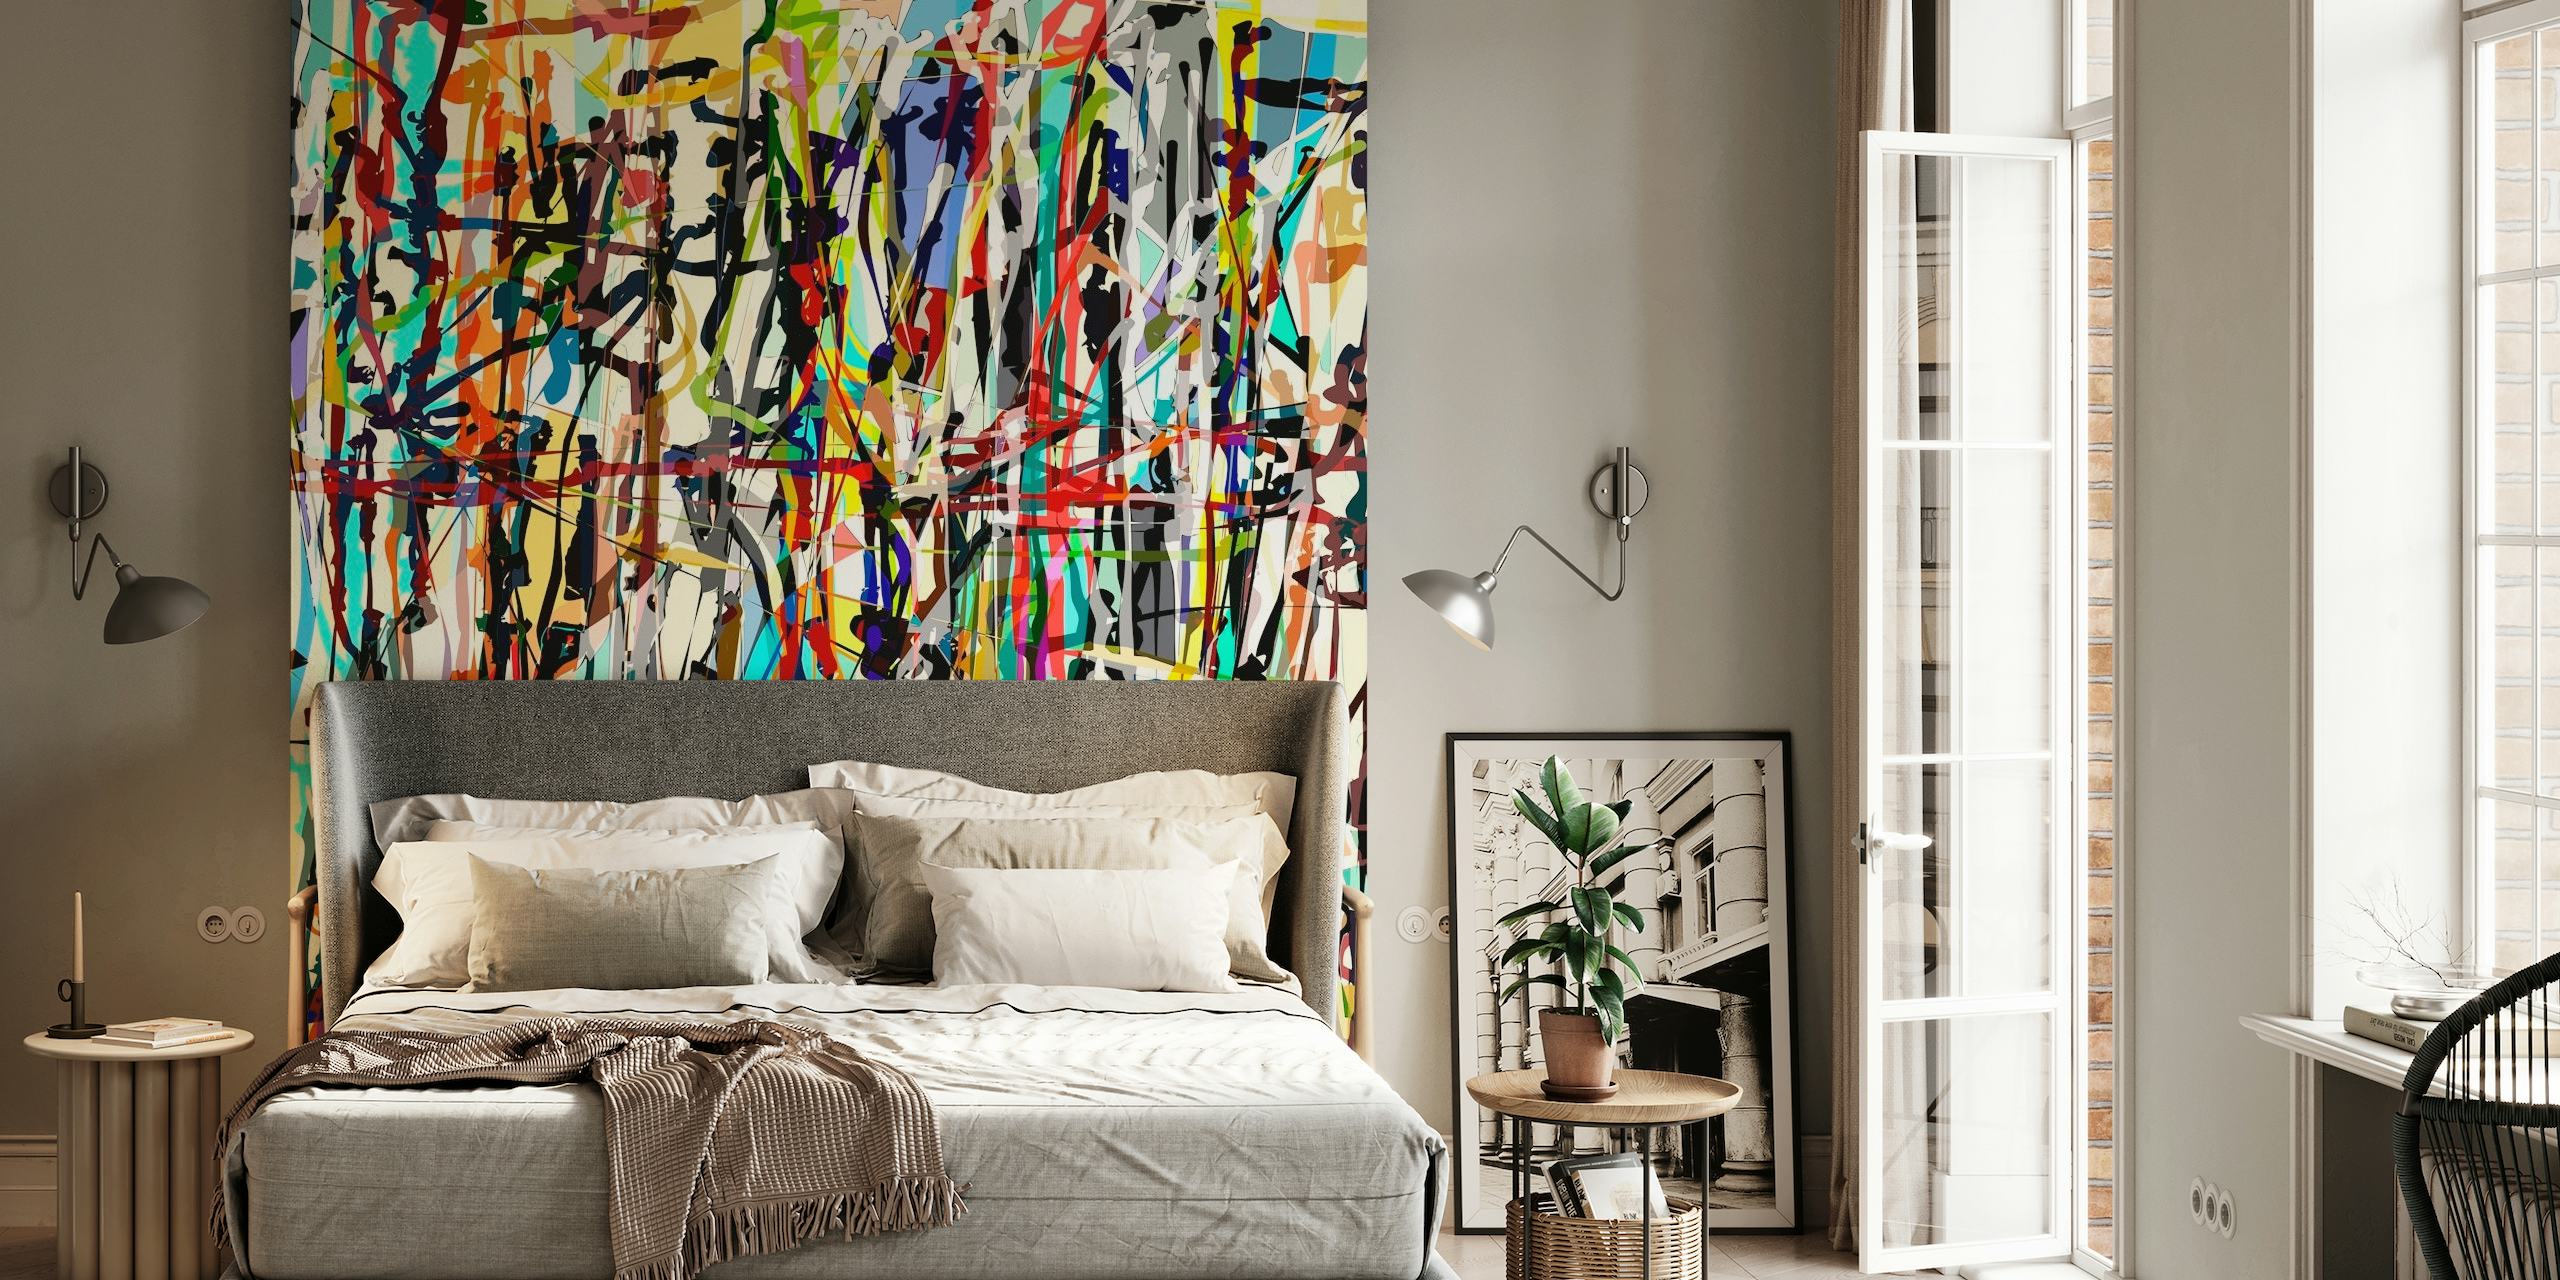 Mural de pared abstracto inspirado en Pollock con una colorida mezcla de vibrantes salpicaduras y pinceladas.